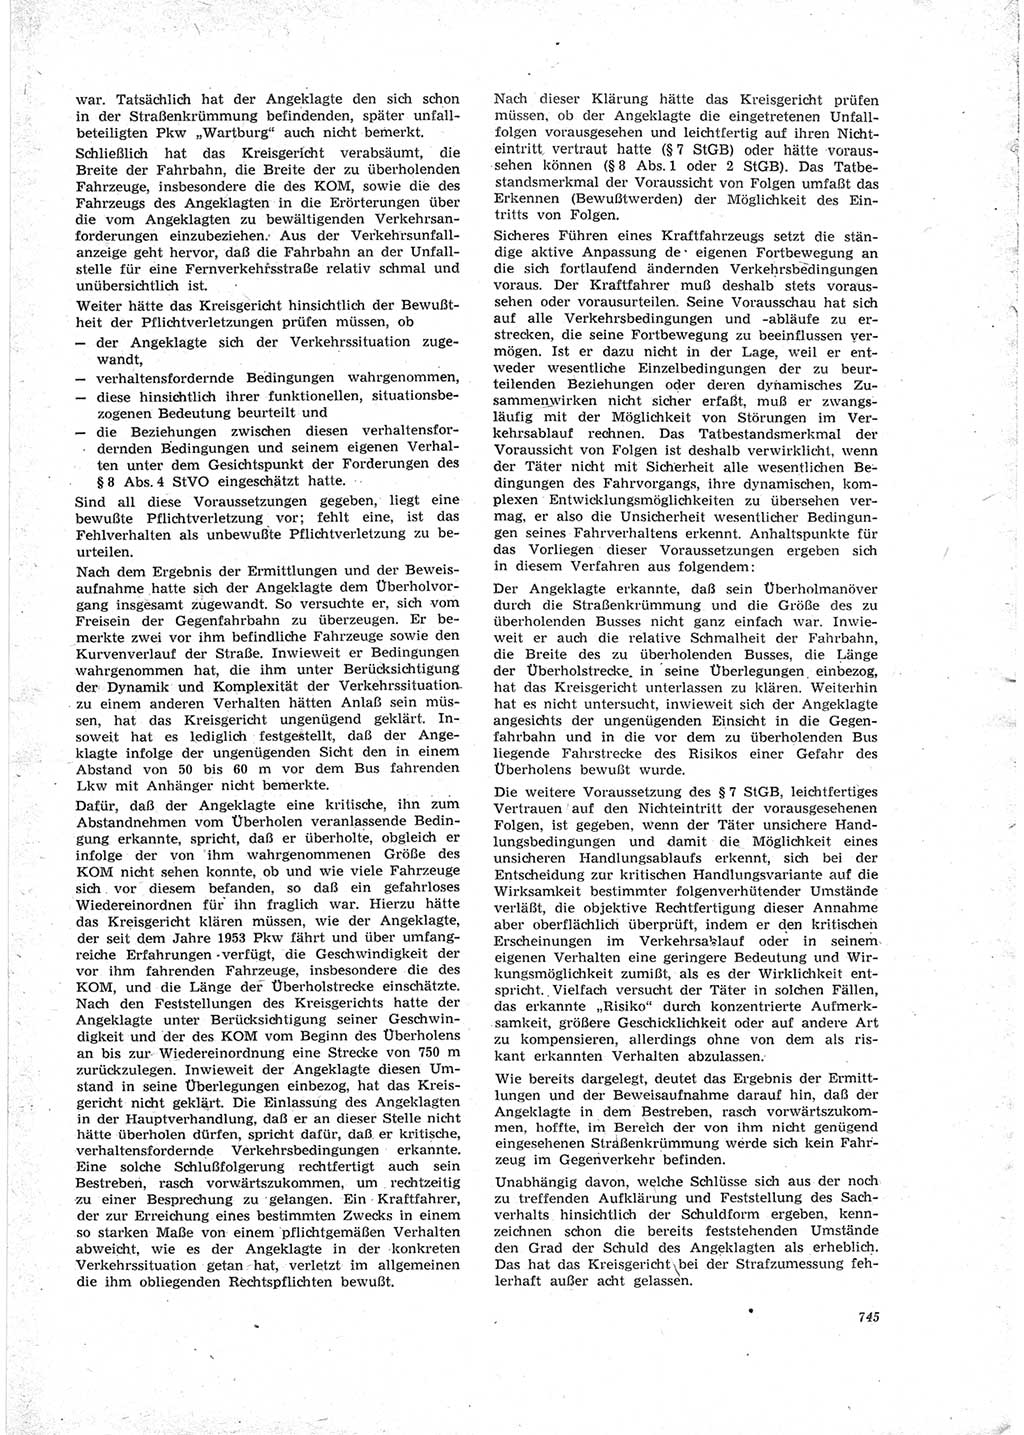 Neue Justiz (NJ), Zeitschrift für Recht und Rechtswissenschaft [Deutsche Demokratische Republik (DDR)], 23. Jahrgang 1969, Seite 745 (NJ DDR 1969, S. 745)